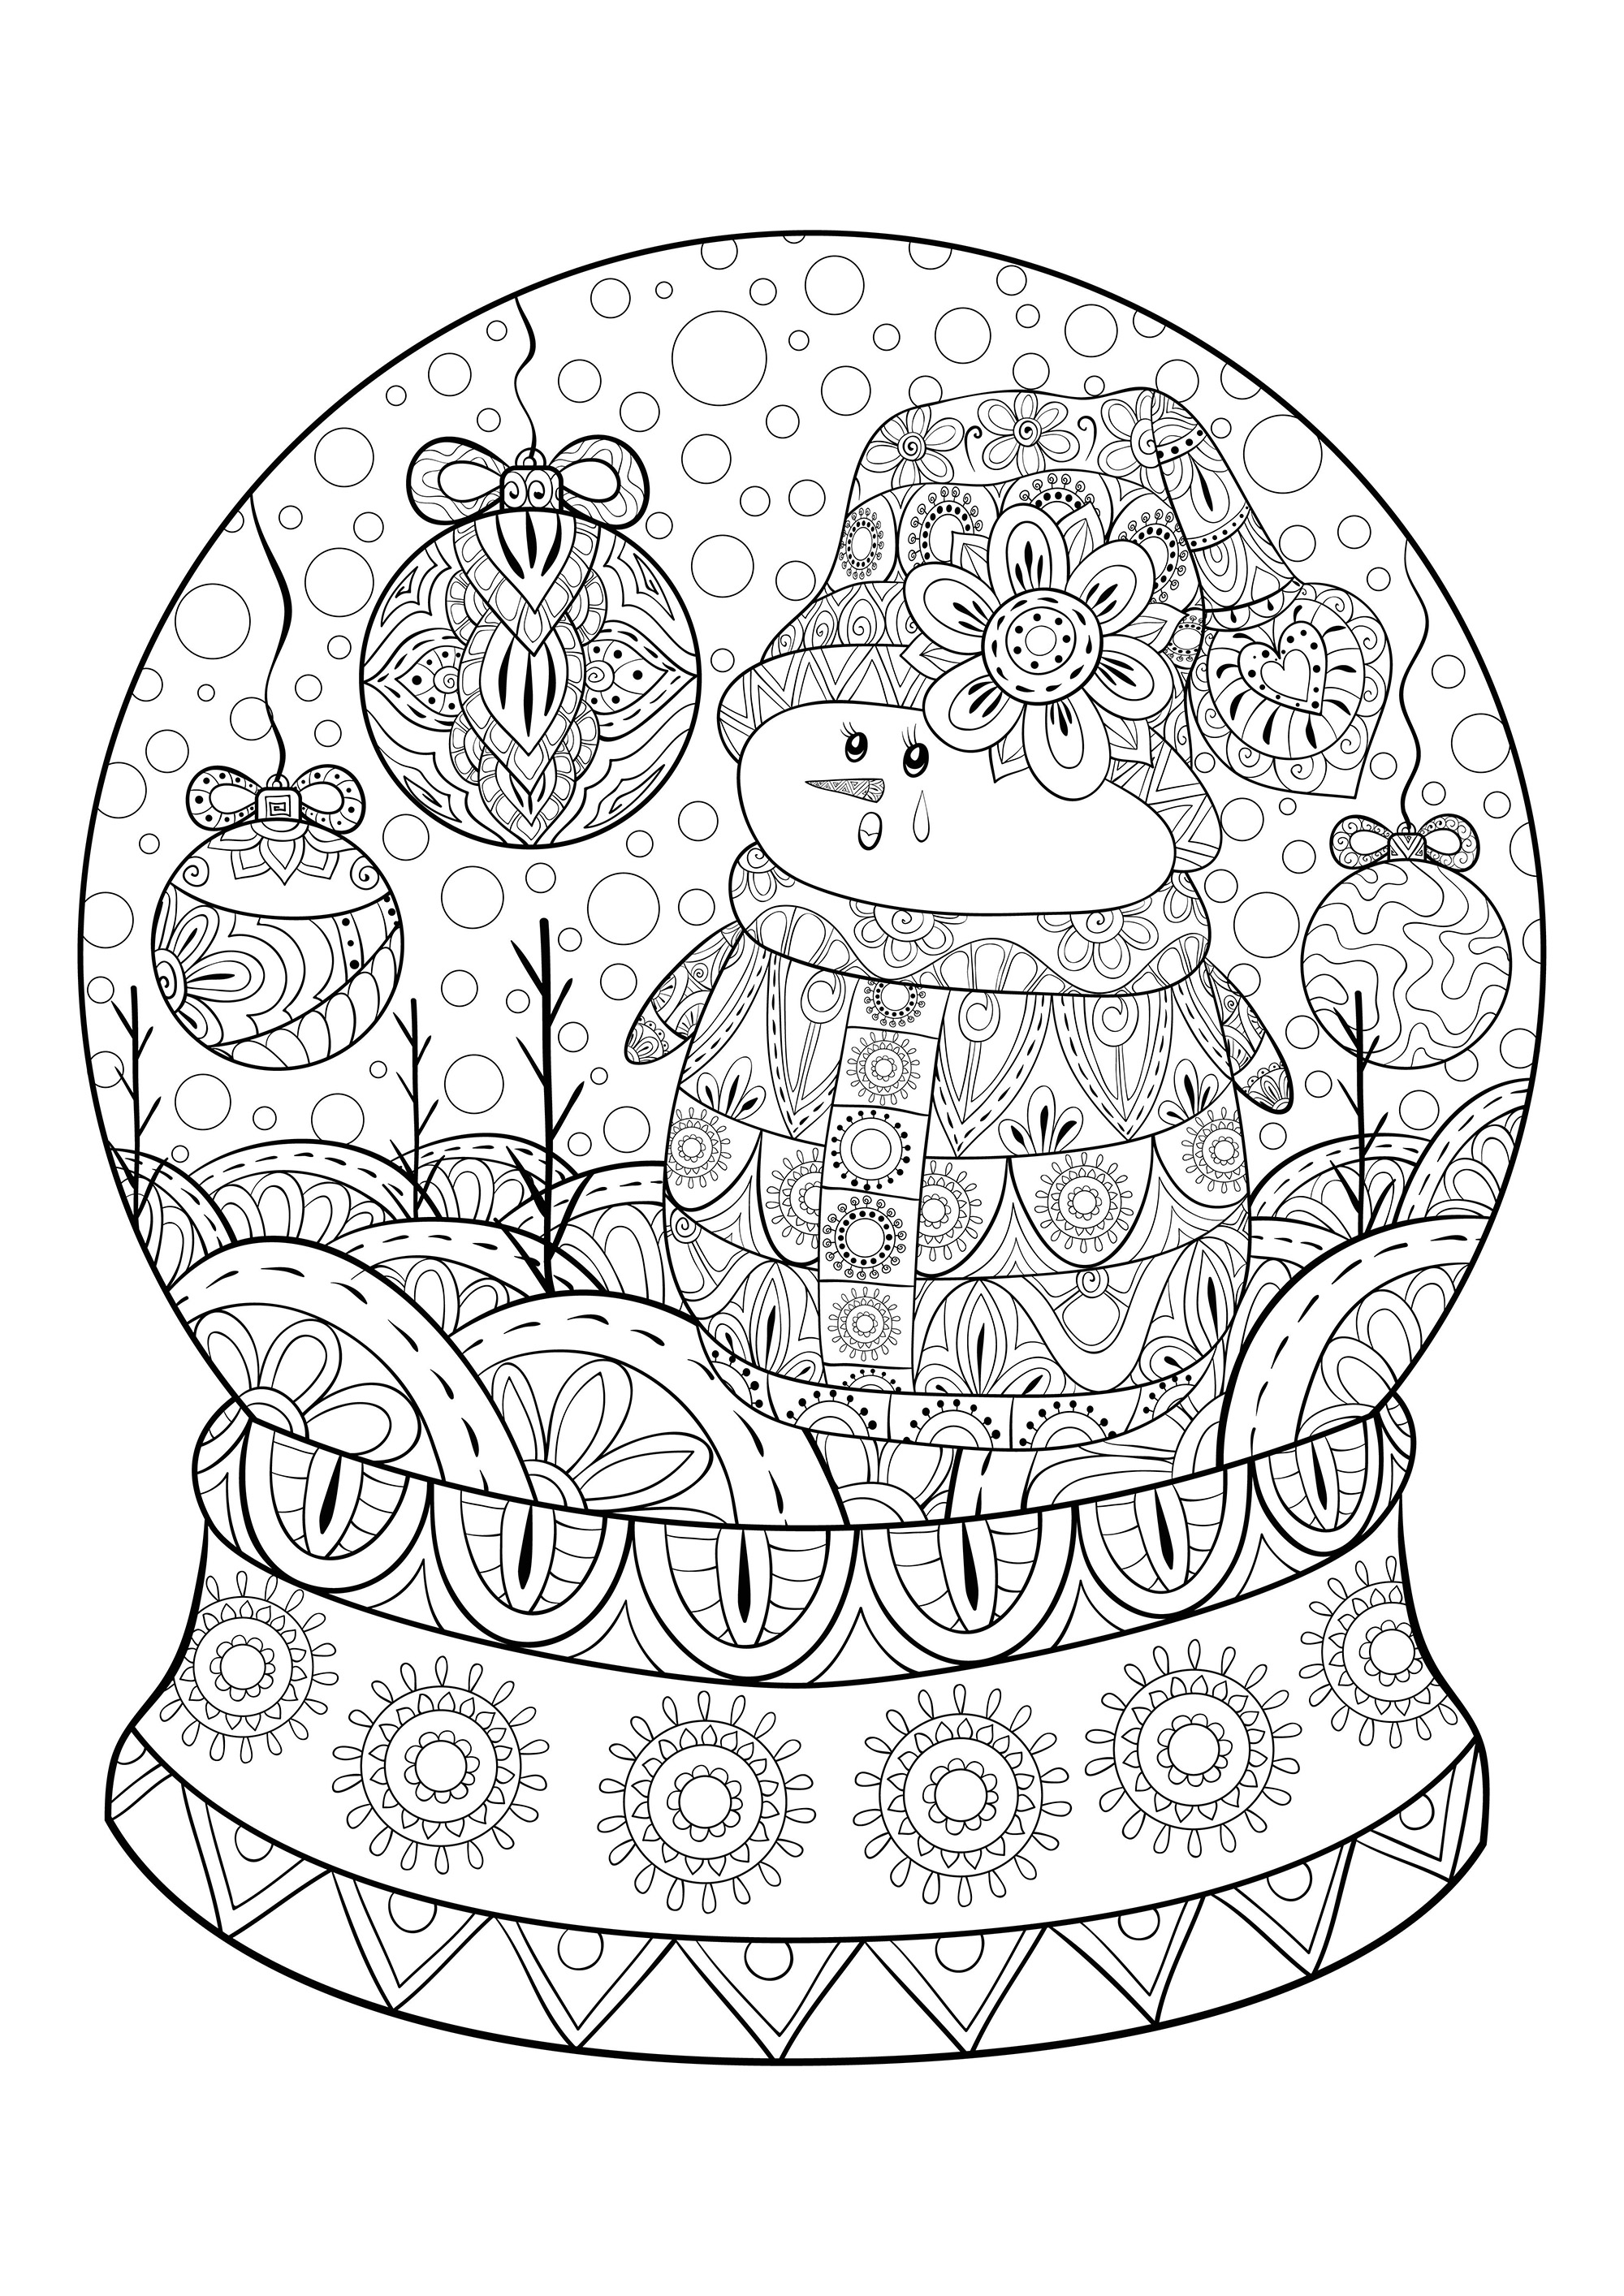 Una bola de nieve navideña con un muñeco de nieve y bolas de decoración navideña, Origen : 123rf   Artista : Nonuzza